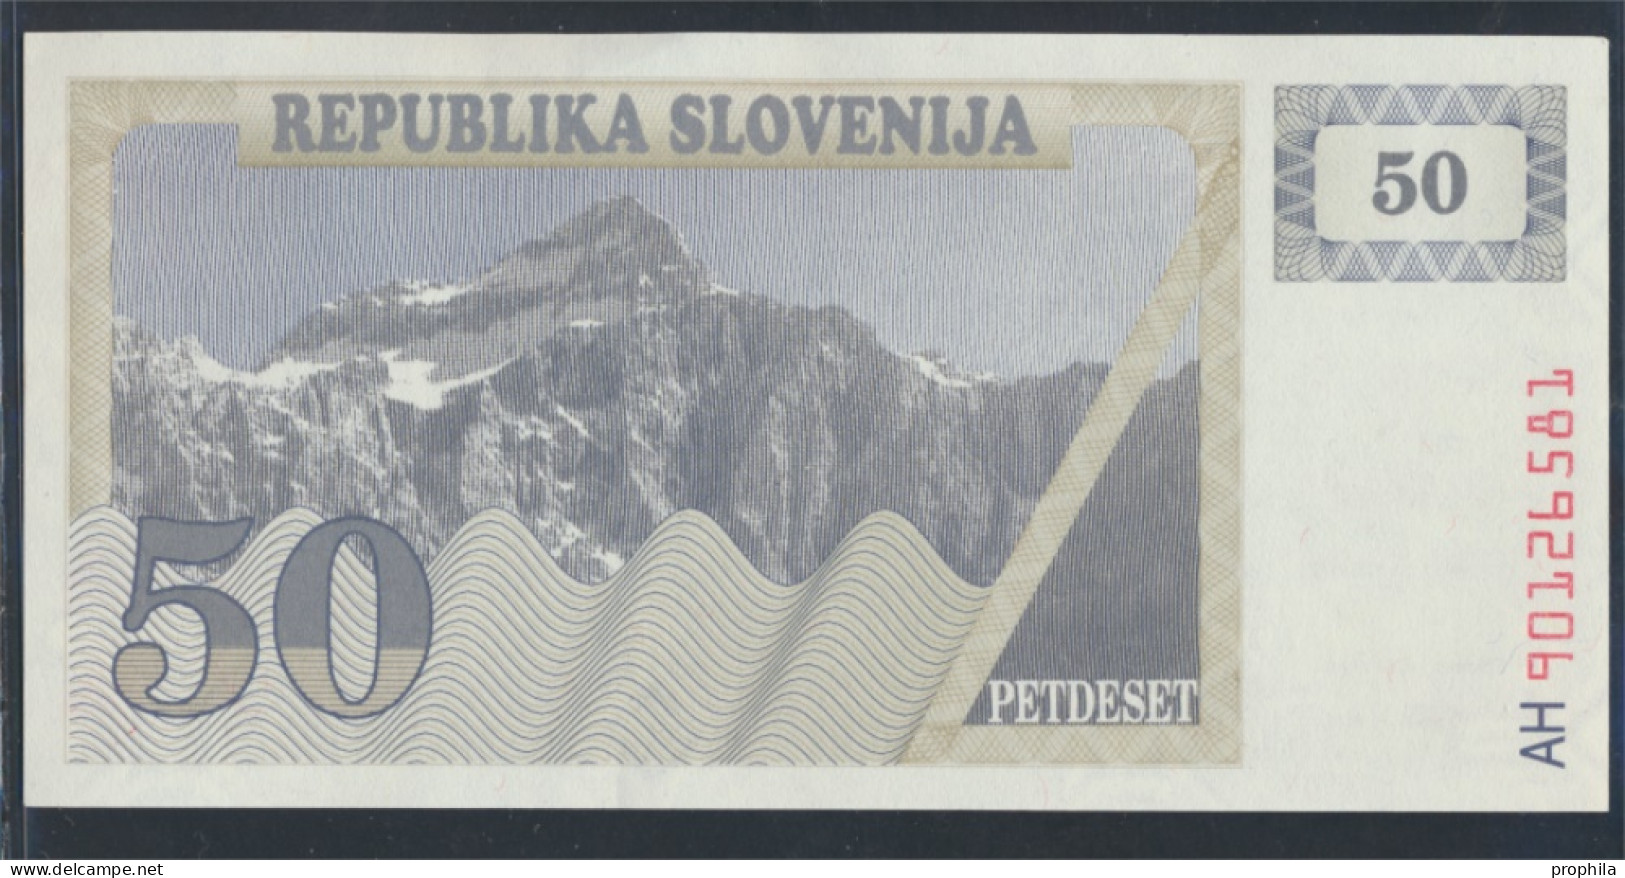 Slowenien Pick-Nr: 5a Bankfrisch 1990 50 Tolarjev (9855652 - Slowenien